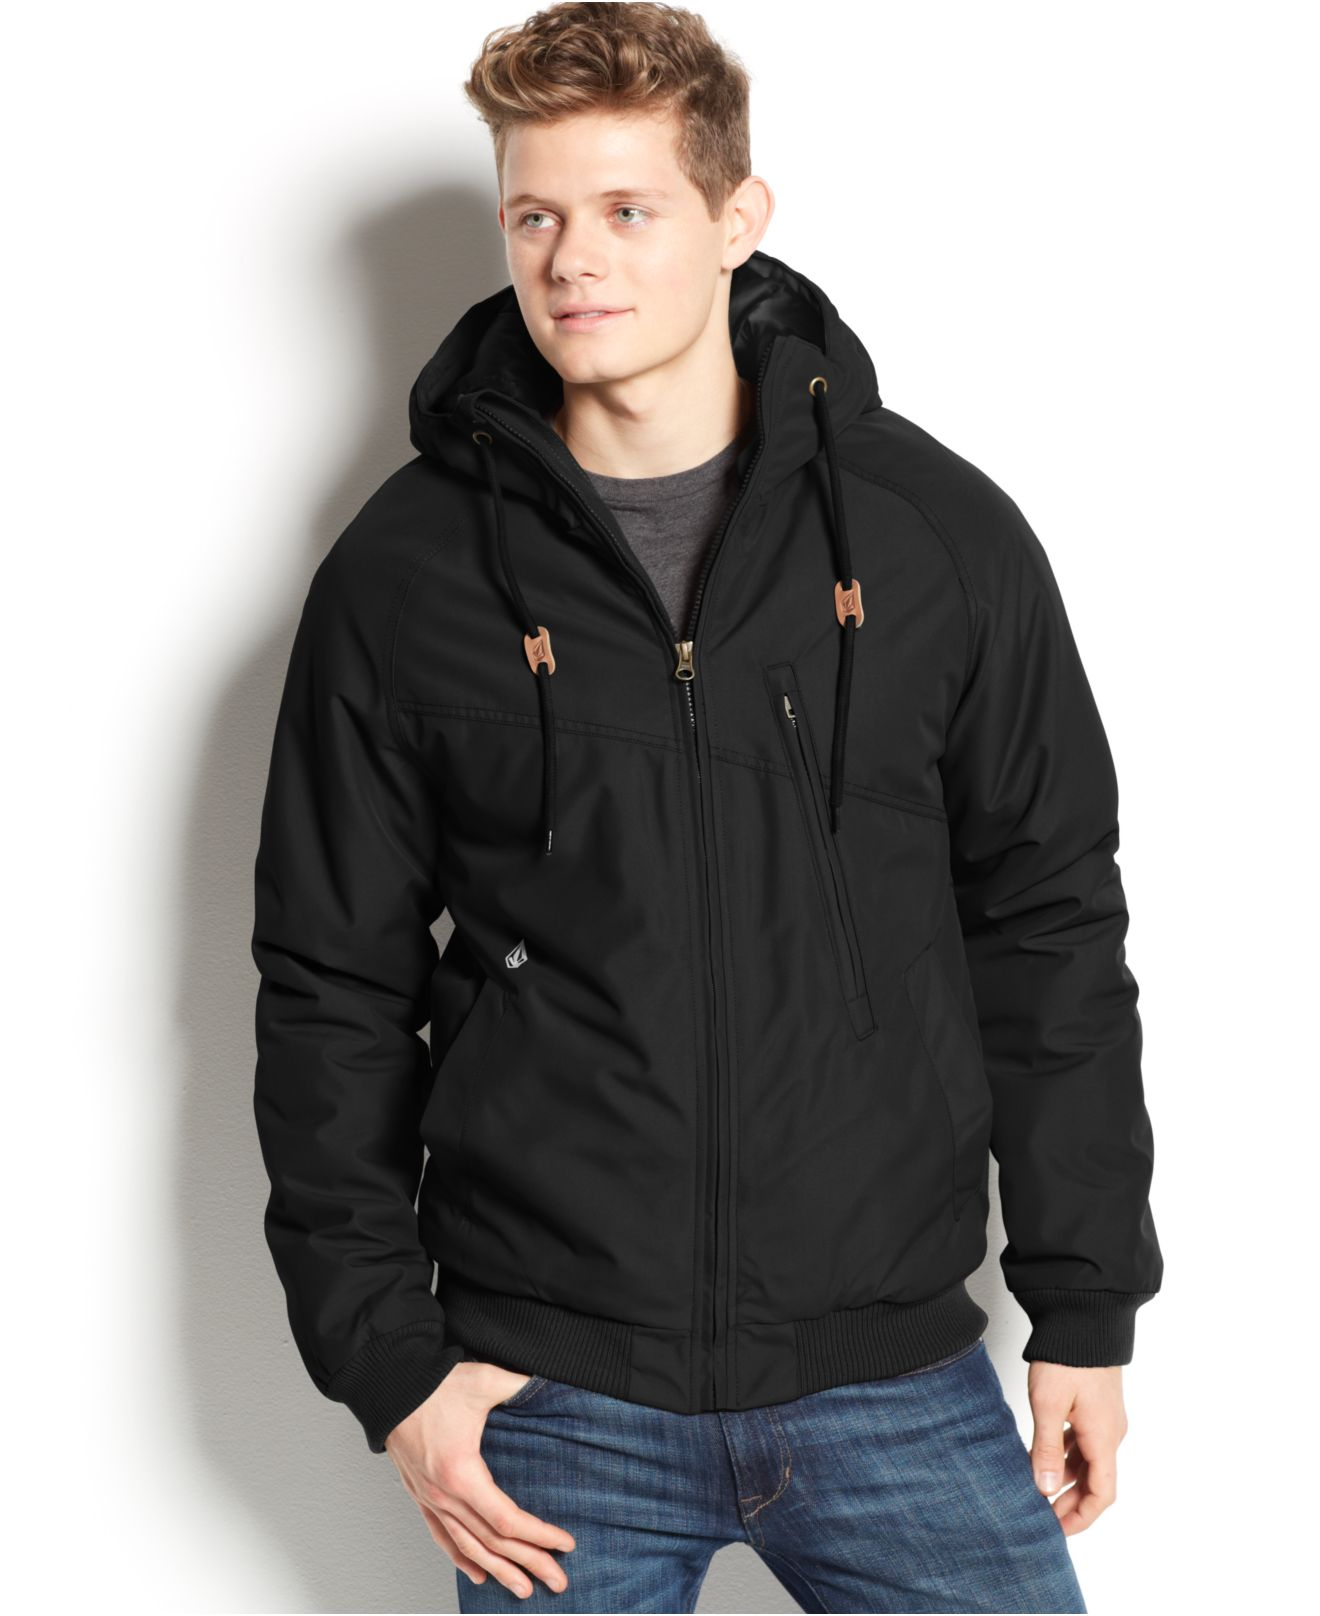 Lyst - Volcom Hernan Hooded Jacket in Black for Men